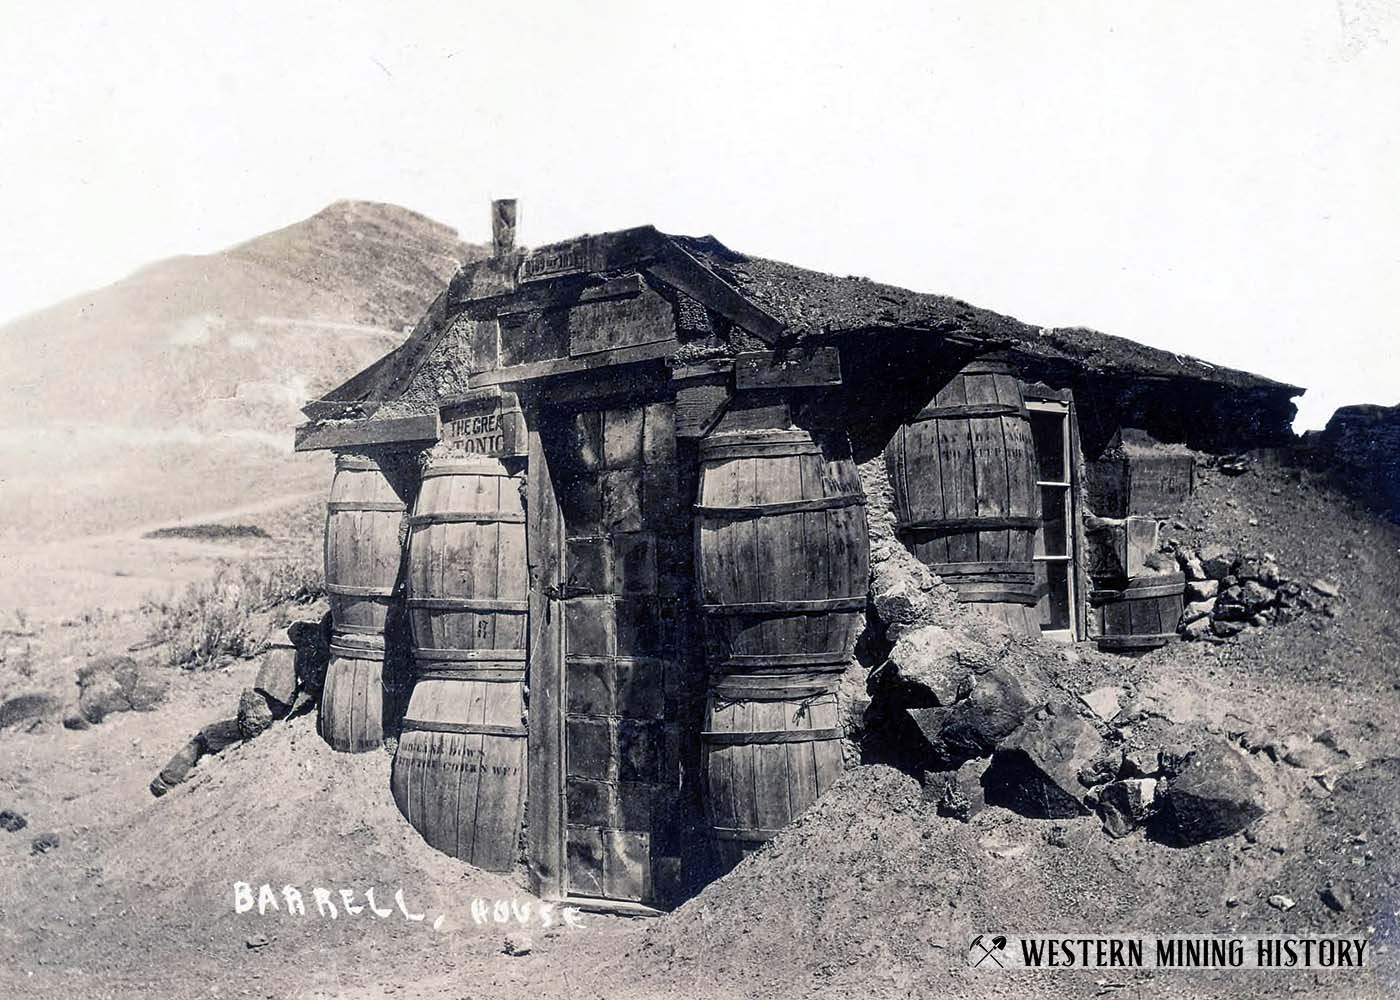 https://westernmininghistory.com/images/town_gallery/Tonopah_Barrel_House_Eppler_BW_1400.jpg